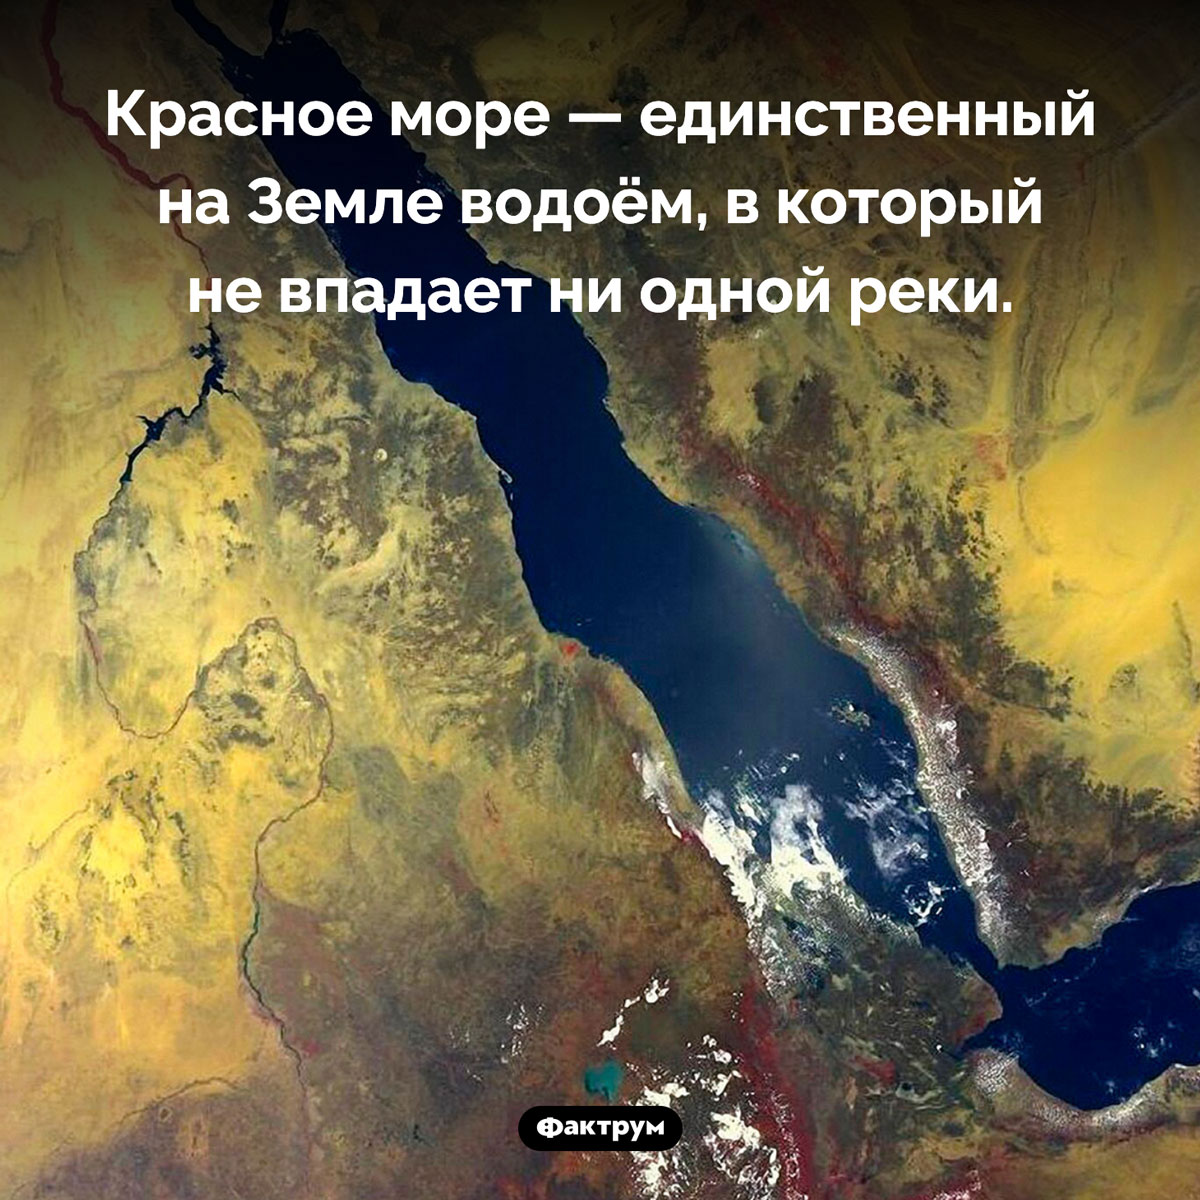 Уникальность Красного моря. Красное море — единственный на Земле водоём, в который не впадает ни одной реки.